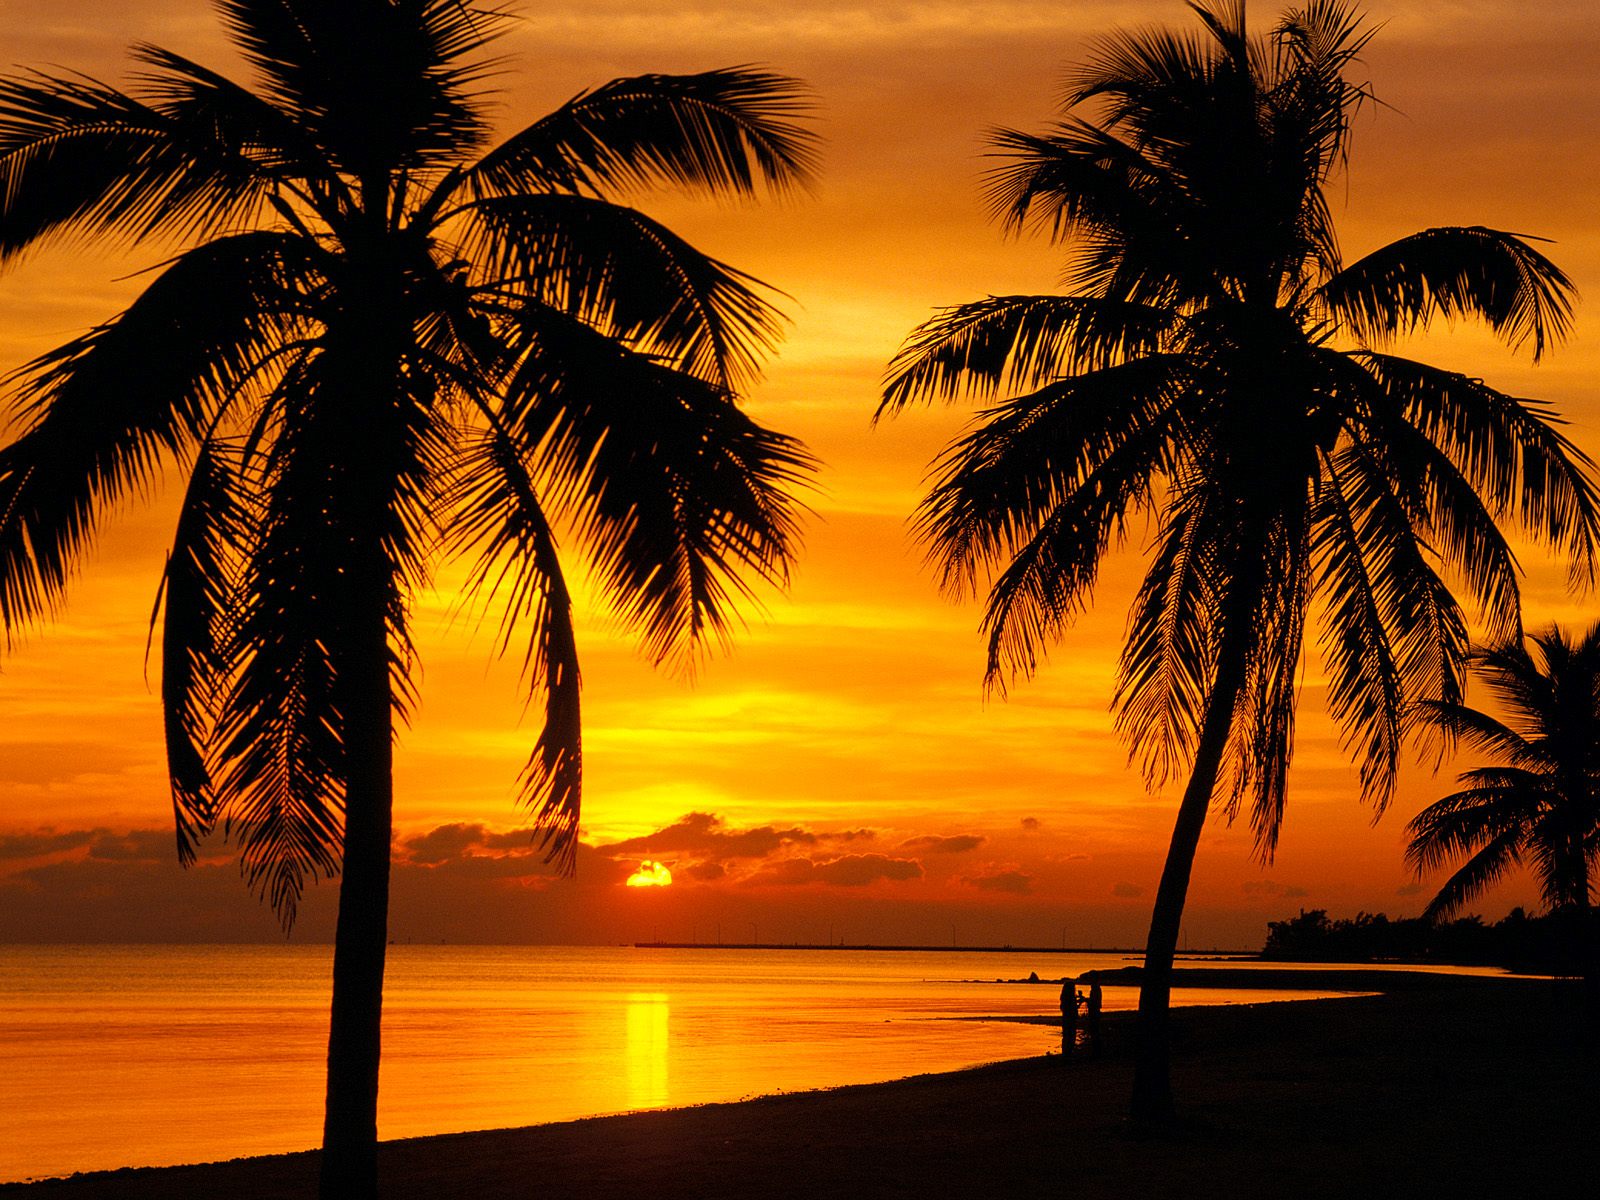 Thưởng thức những phút giây lặng lẽ cùng bình minh hoàng hôn tuyệt đẹp ở Key West Sunset. Hãy chìm đắm vào khoảnh khắc đó để thấy sự tươi trẻ và thanh tịnh của cuộc sống.